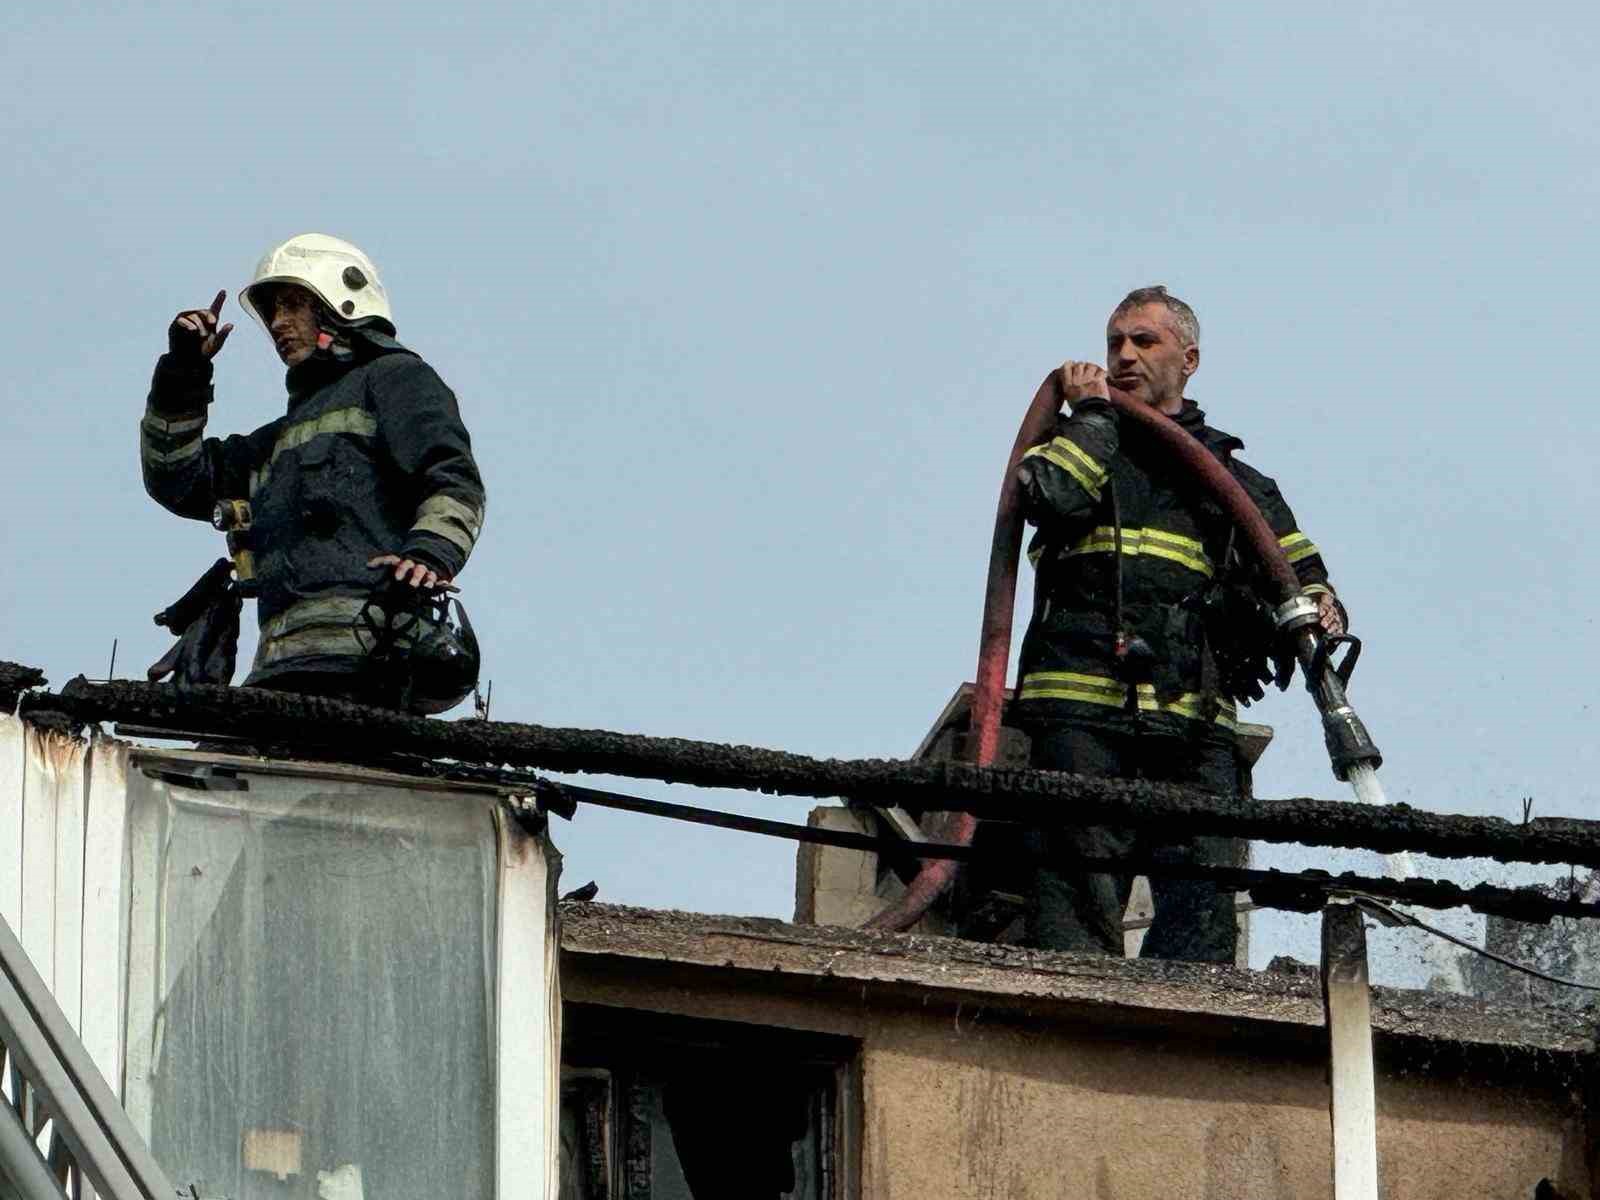 Kapaklı’da 2 binanın çatı katı alev alev yandı
